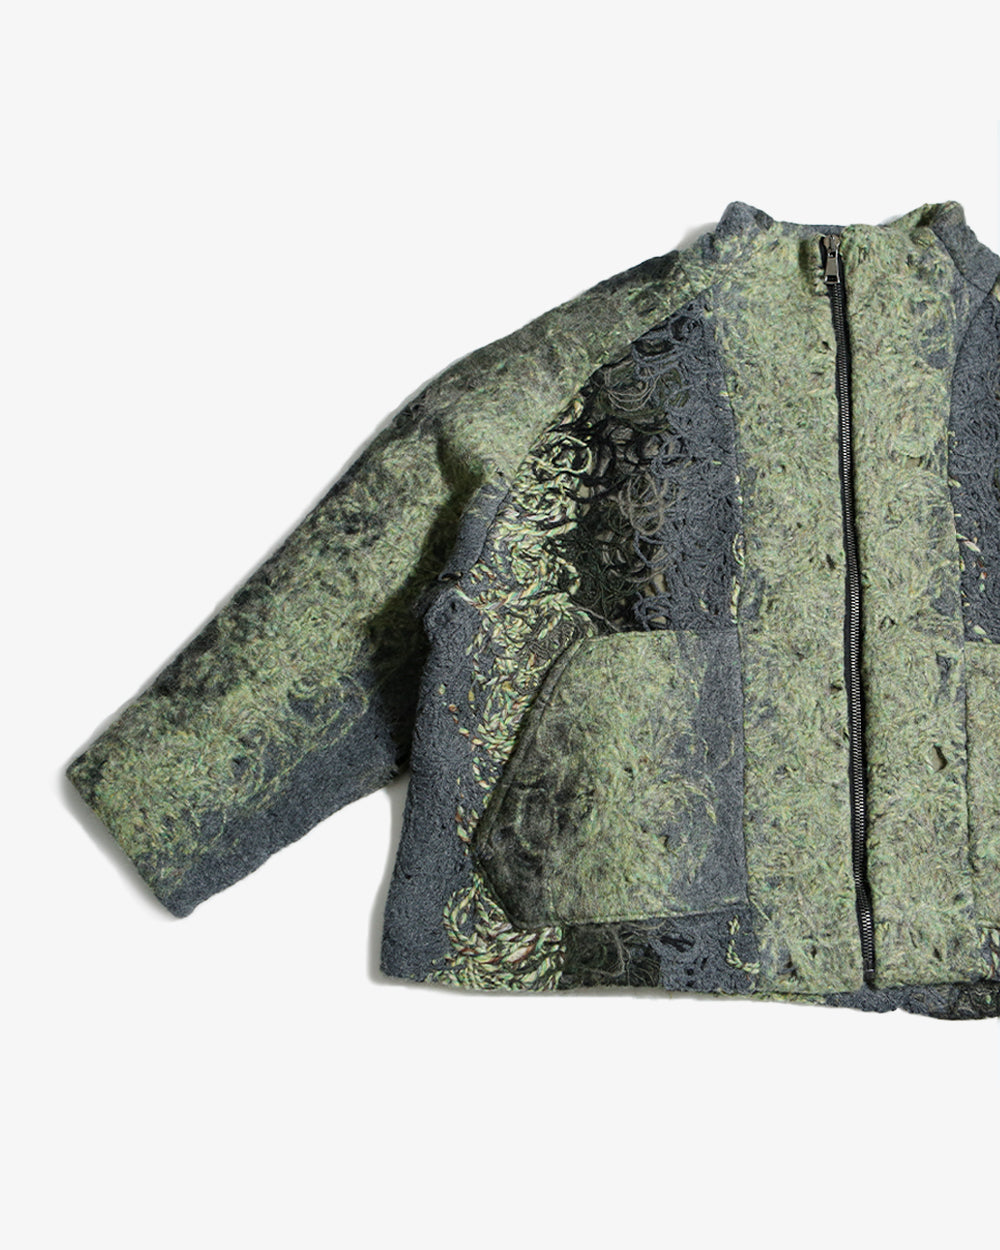 Zip Fleece Jacket M5 (Grey&Green)